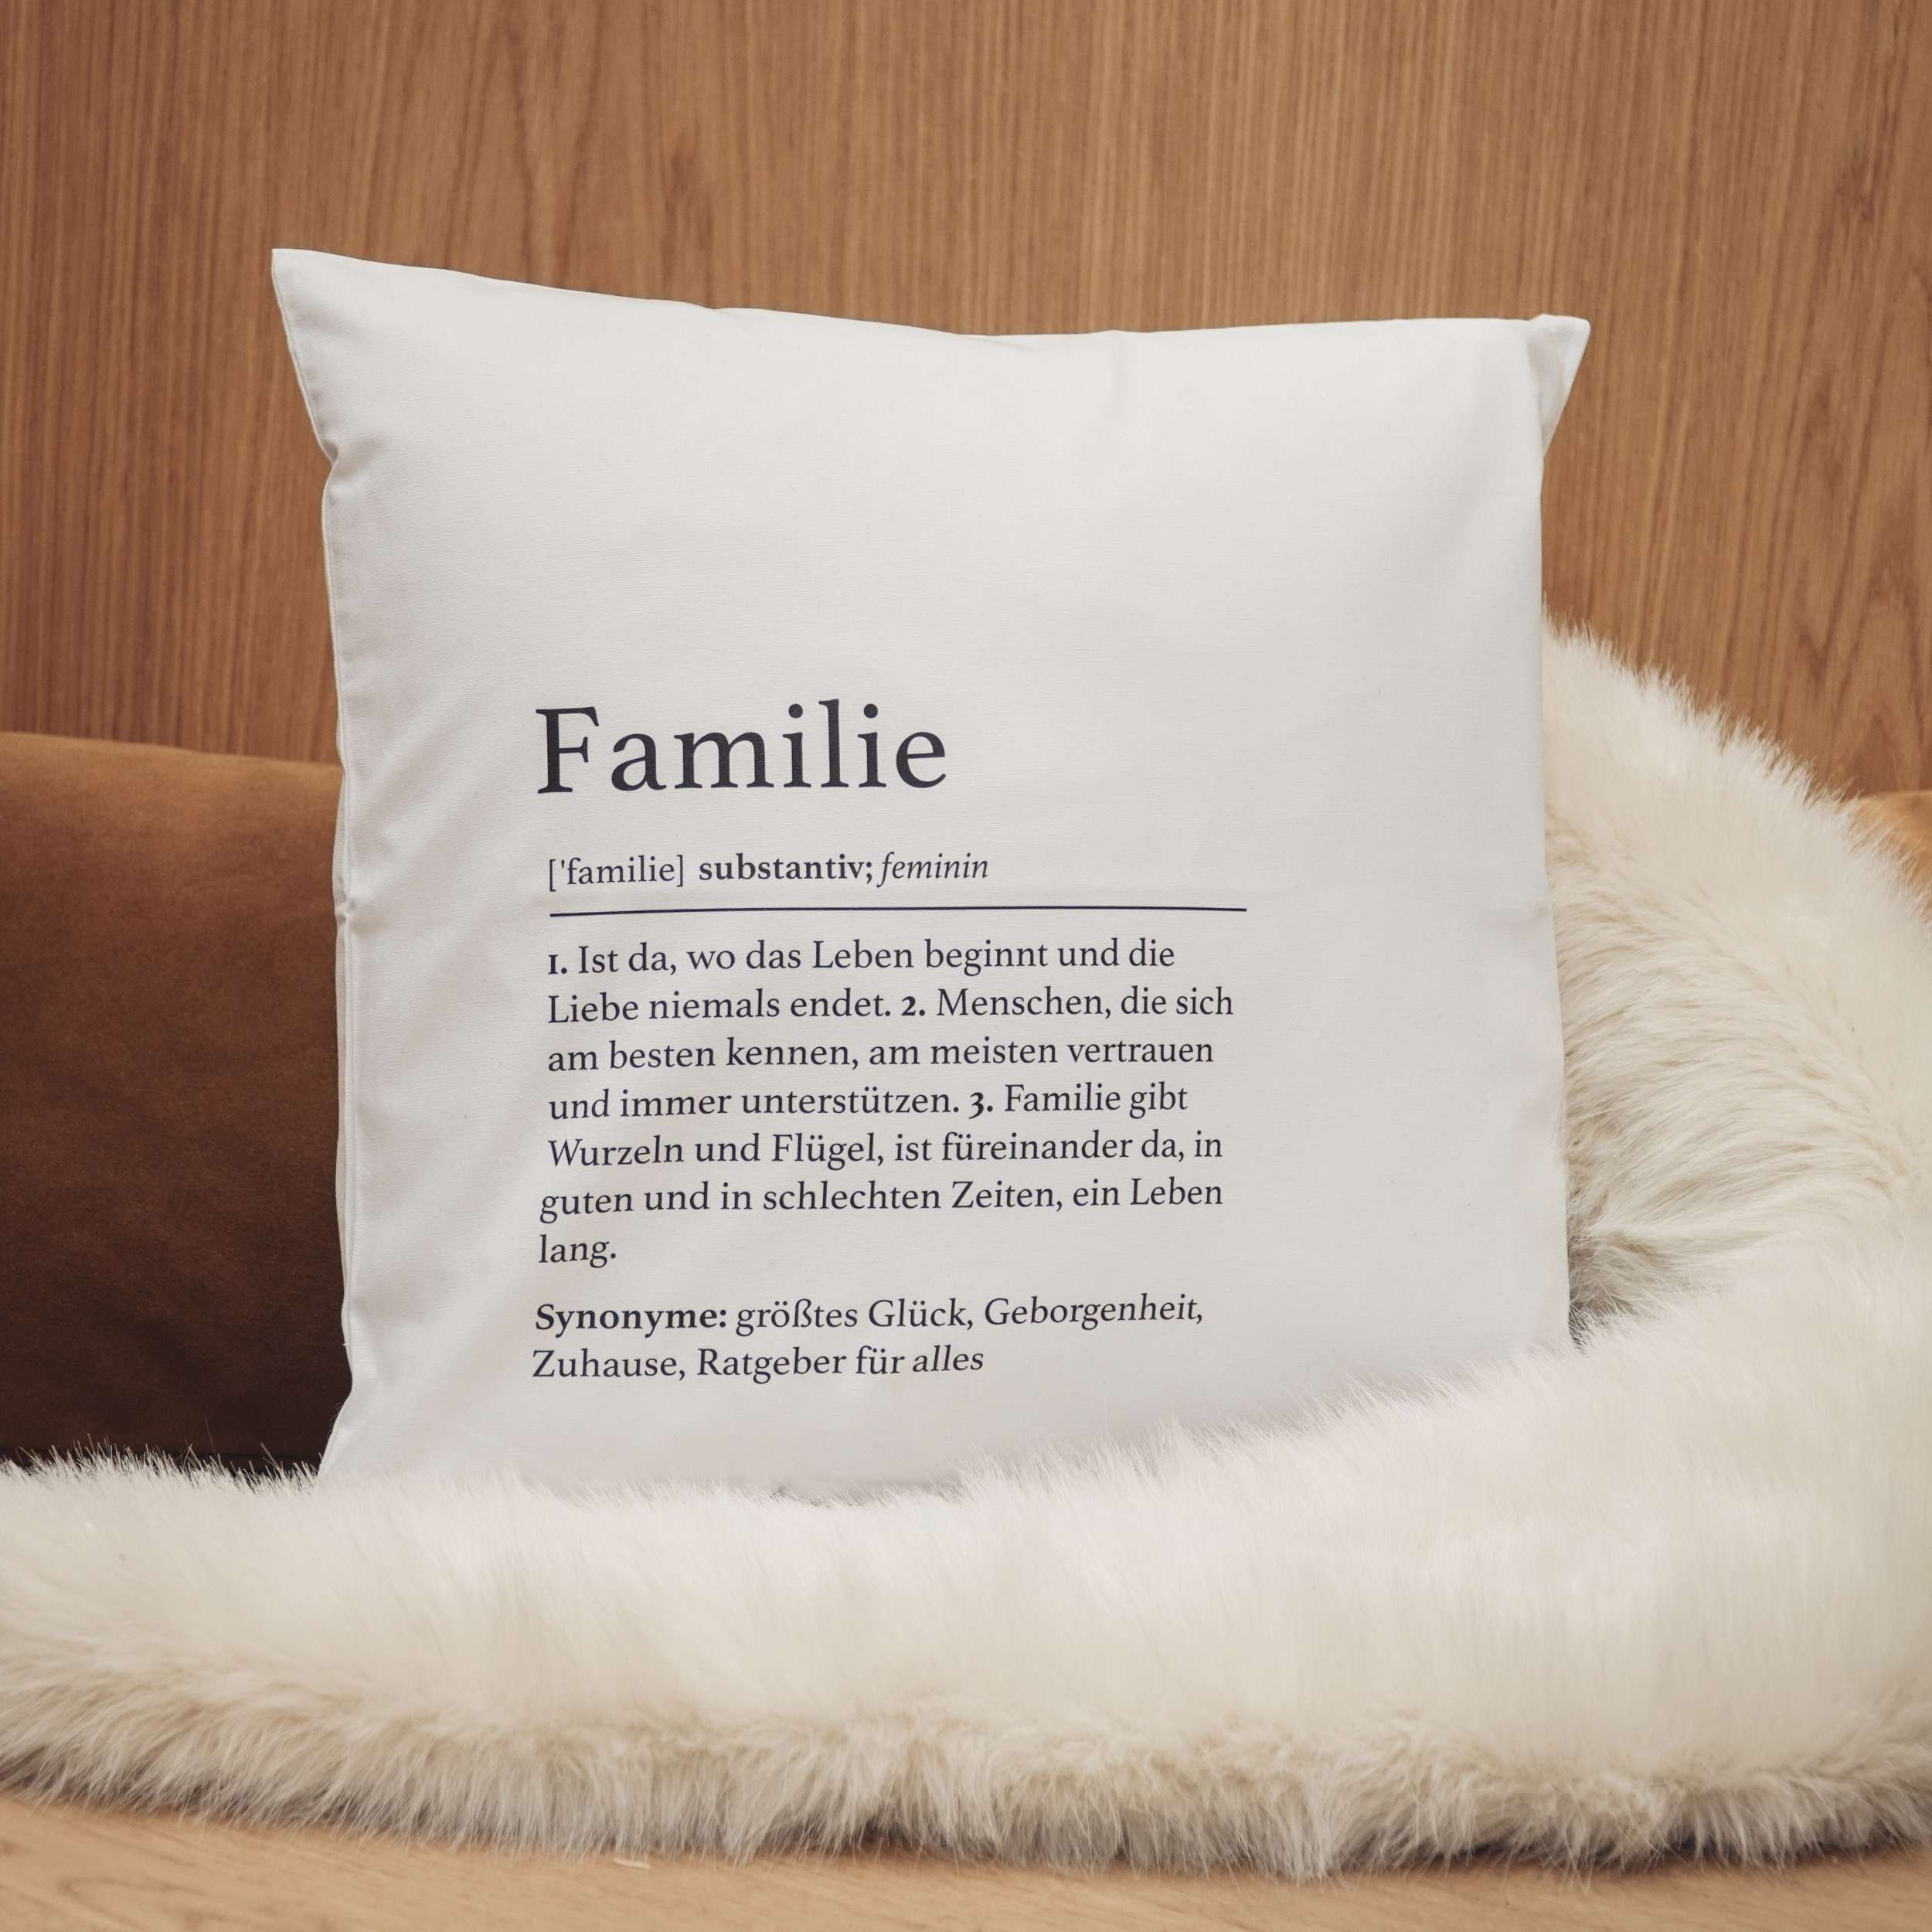 Unsere kuscheligen, personalisierbaren Kissen sind nicht nur großartige Geschenke, sondern auch die perfekte Art, dem Zuhause eine persönliche Note zu verleihen.